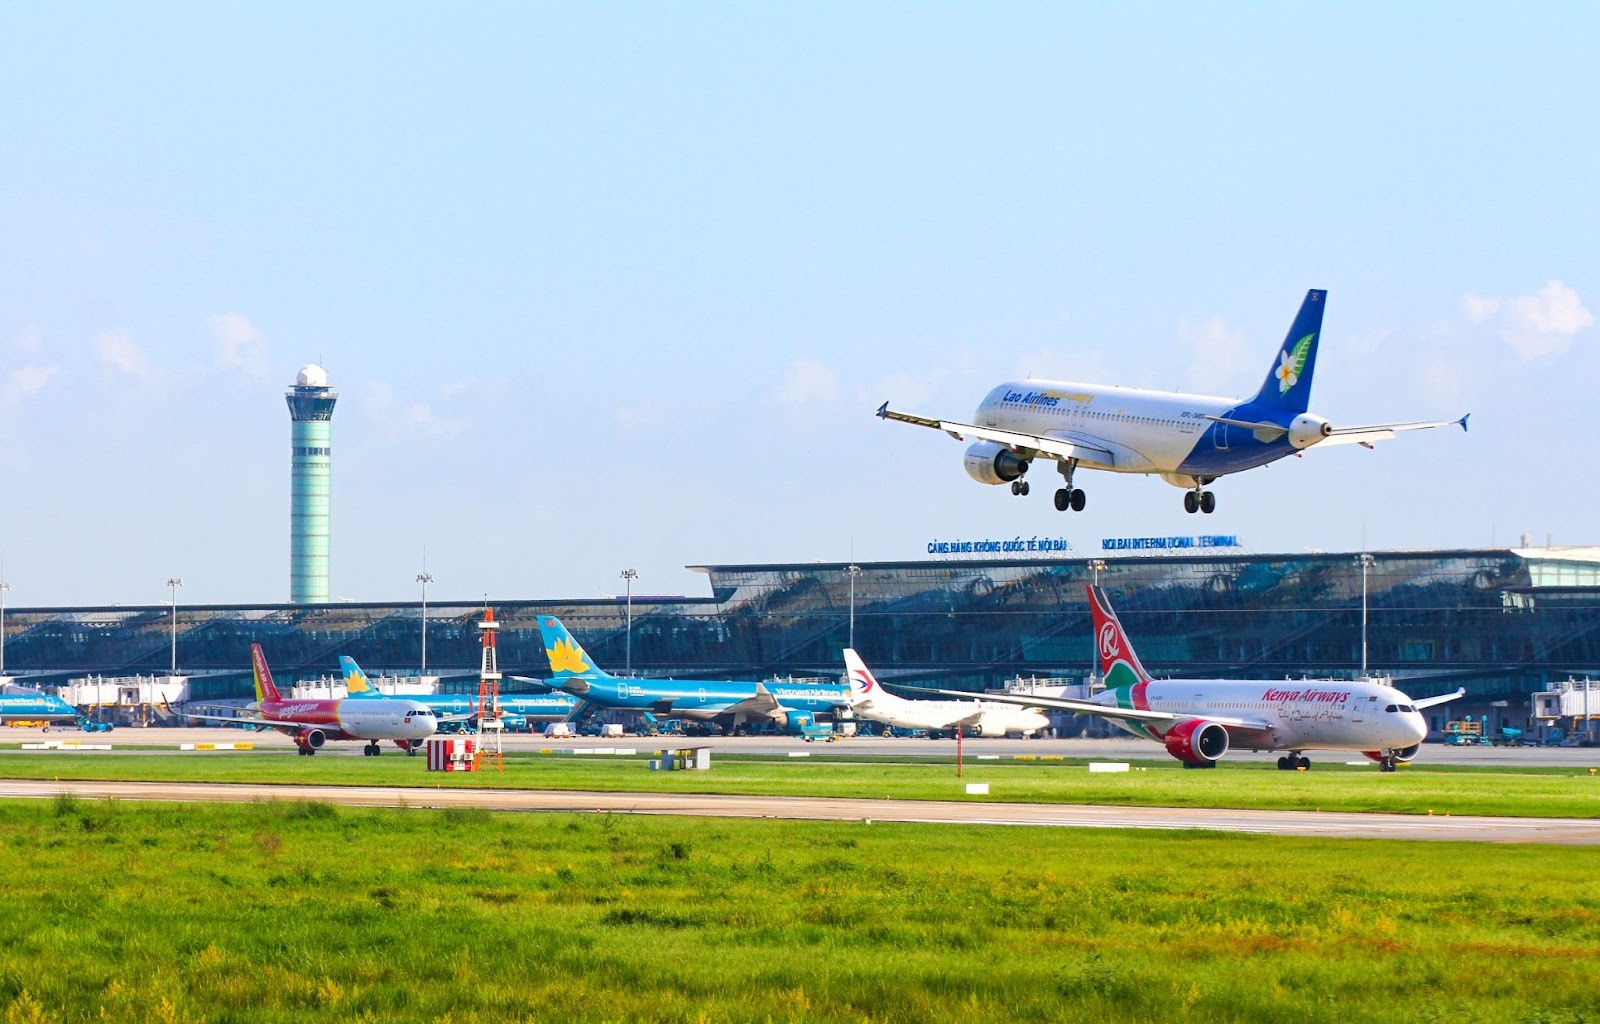 
Nối lại các đường bay quốc tế giúp ngành du lịch Việt Nam sôi động hơn
